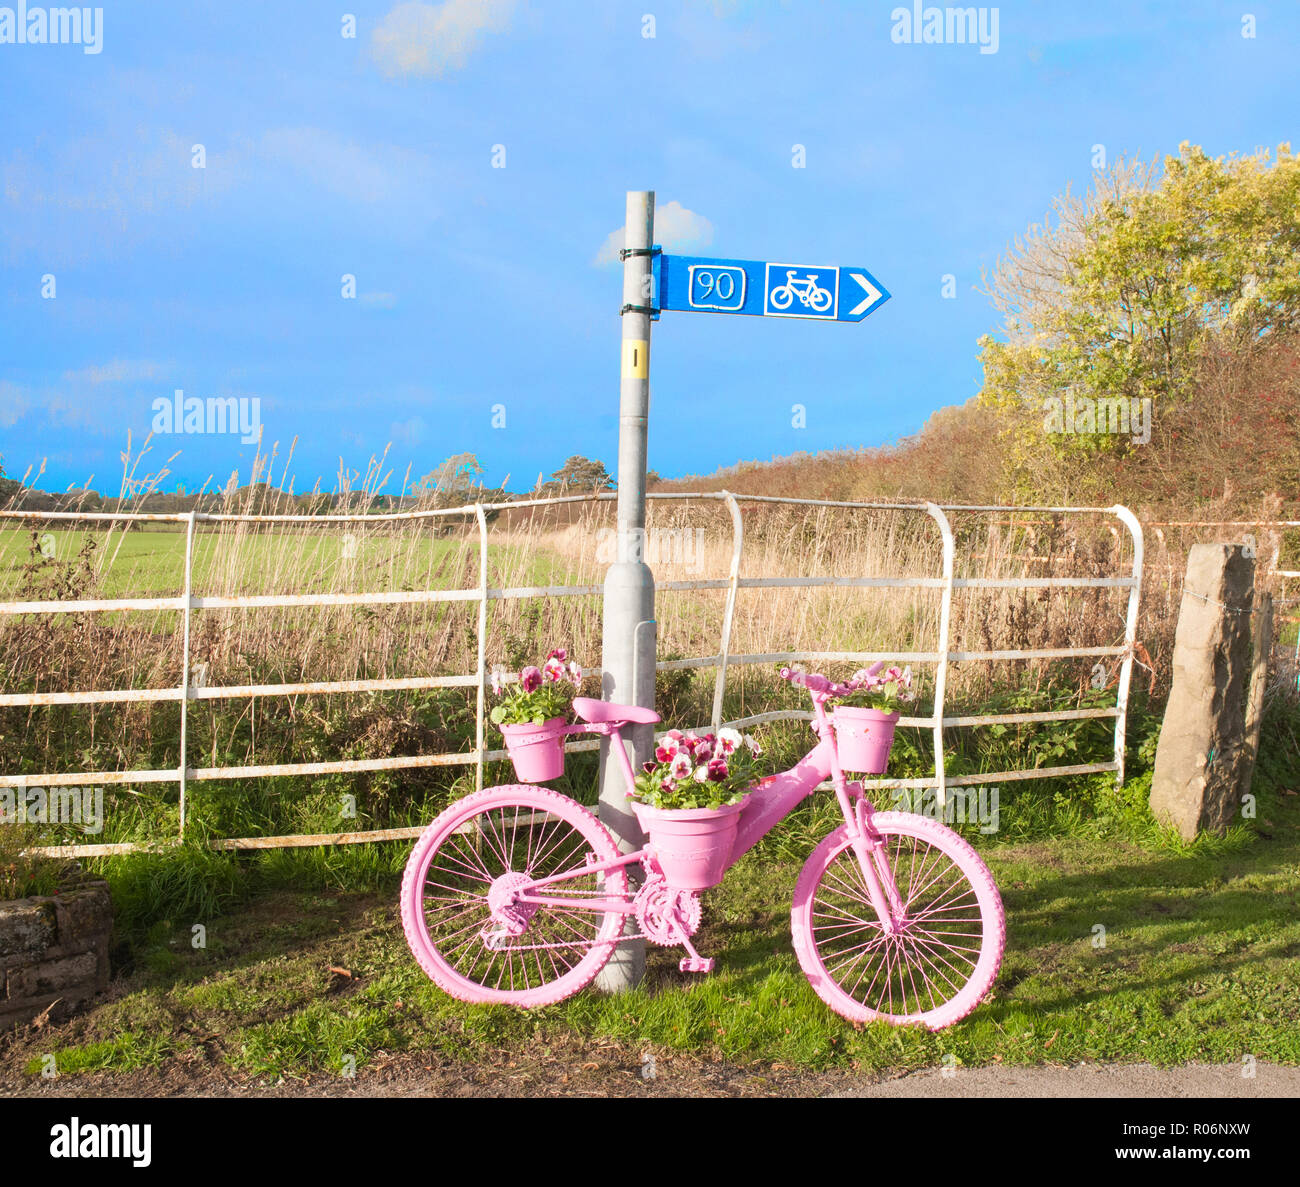 Location bord peint en rose avec des fleurs rose rouge et blanc pensées sur elle. Elswick Lancashire England UK village Banque D'Images